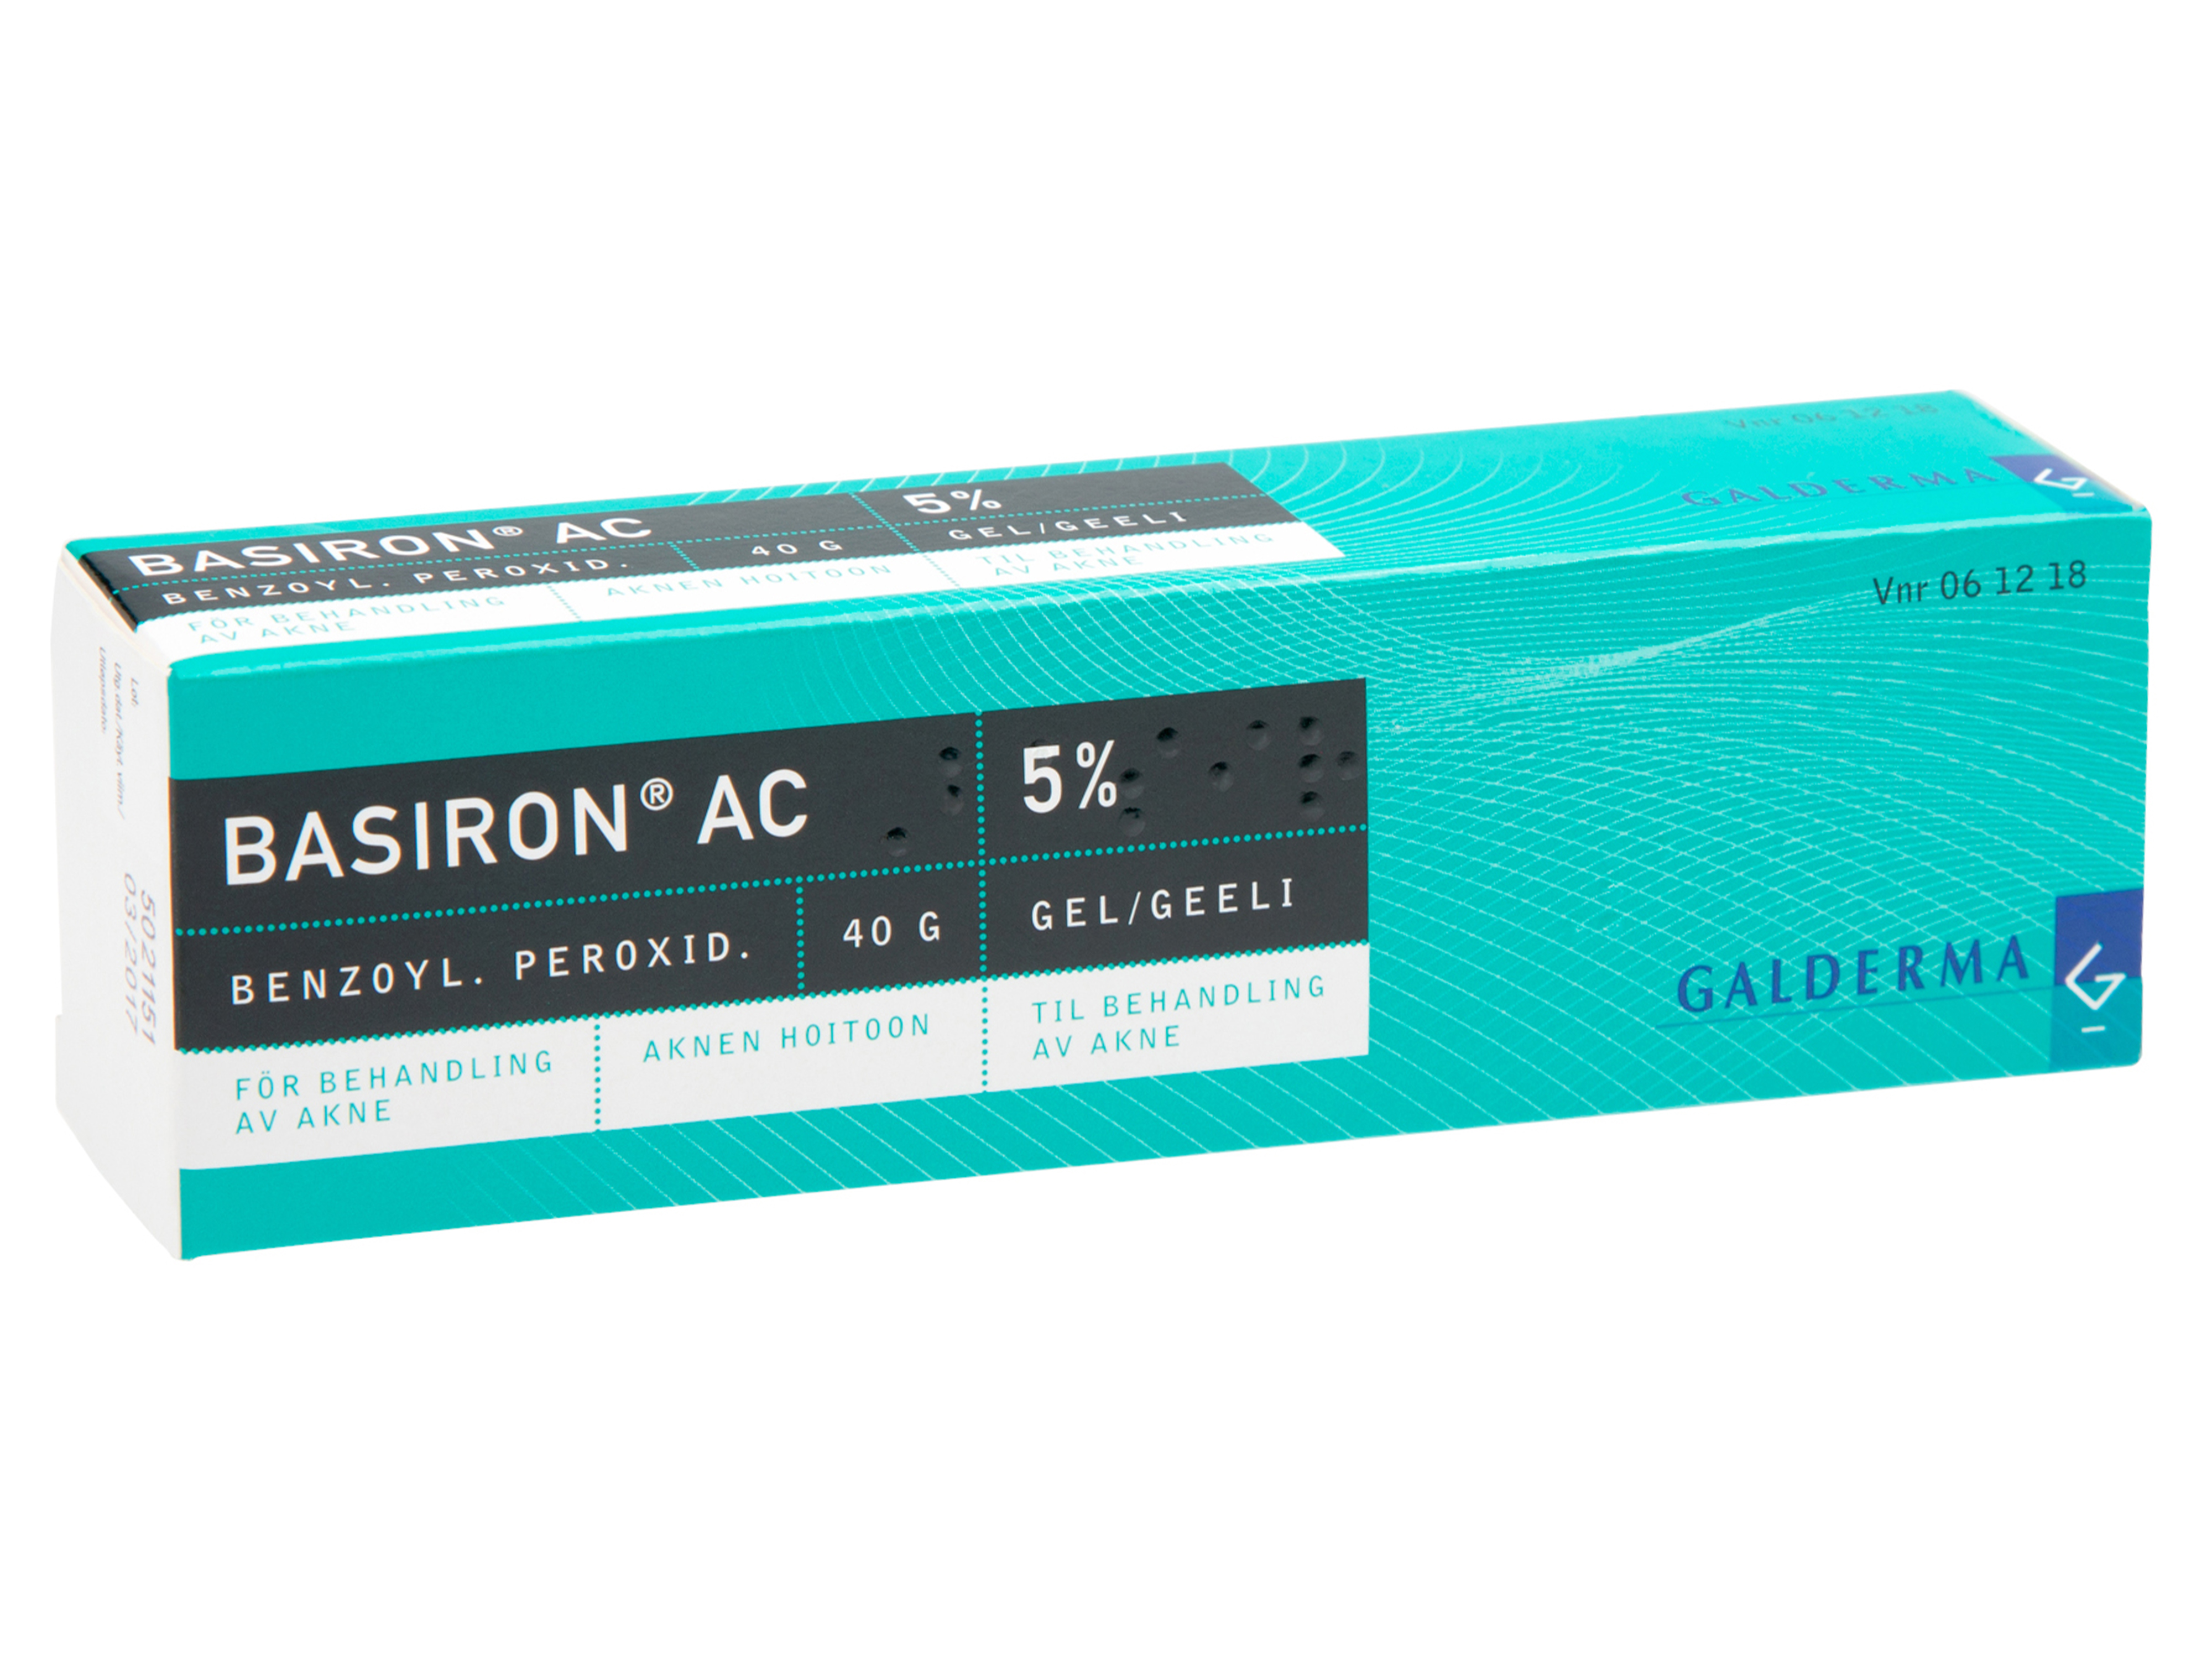 Basiron AC gel 5%, 40 g.